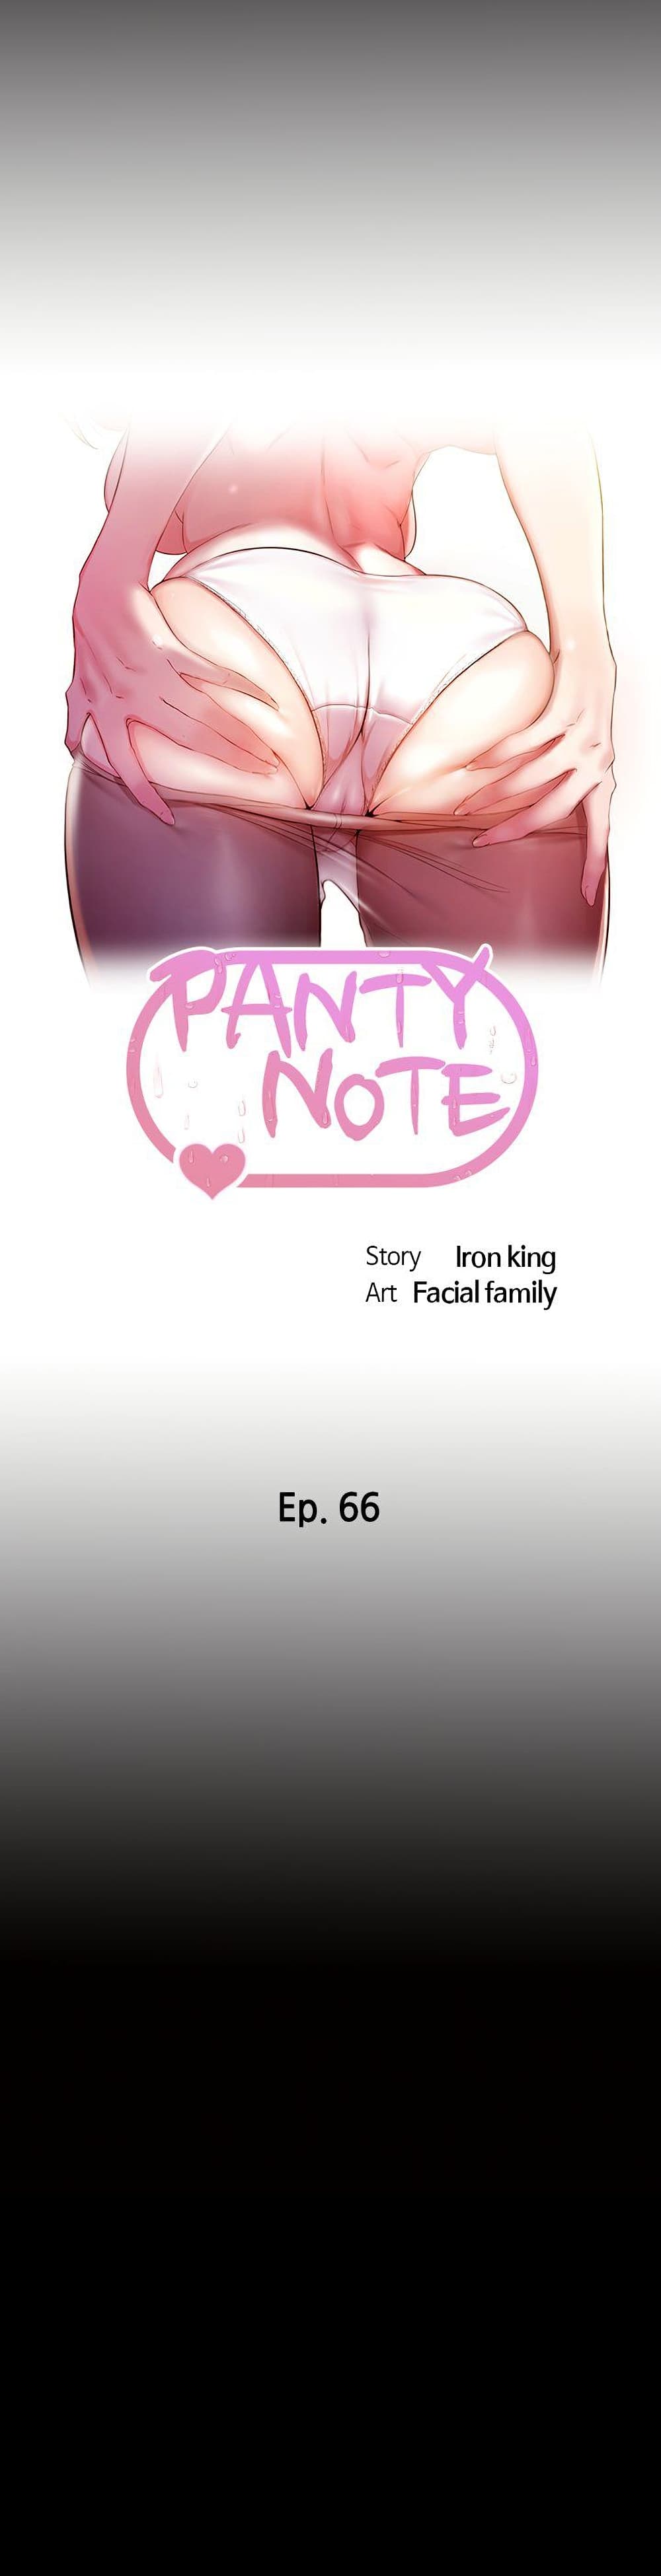 Panty Note 66 (1)